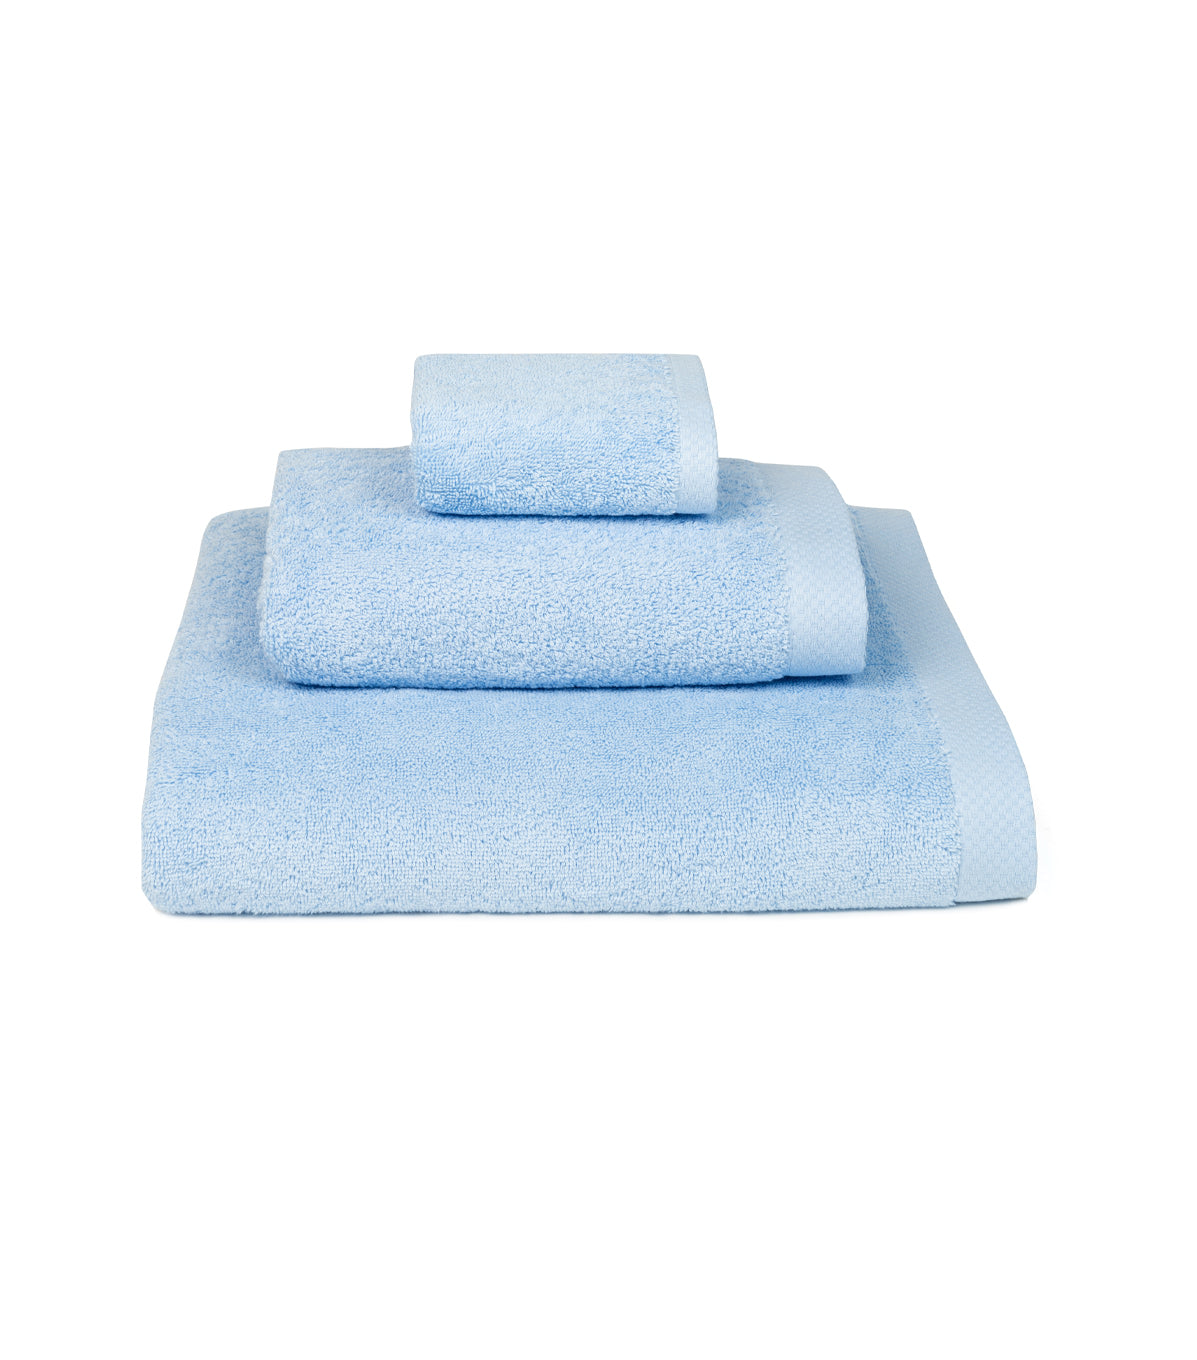 Luxus Bath Towel Set - Light Blue One Size Torres Novas